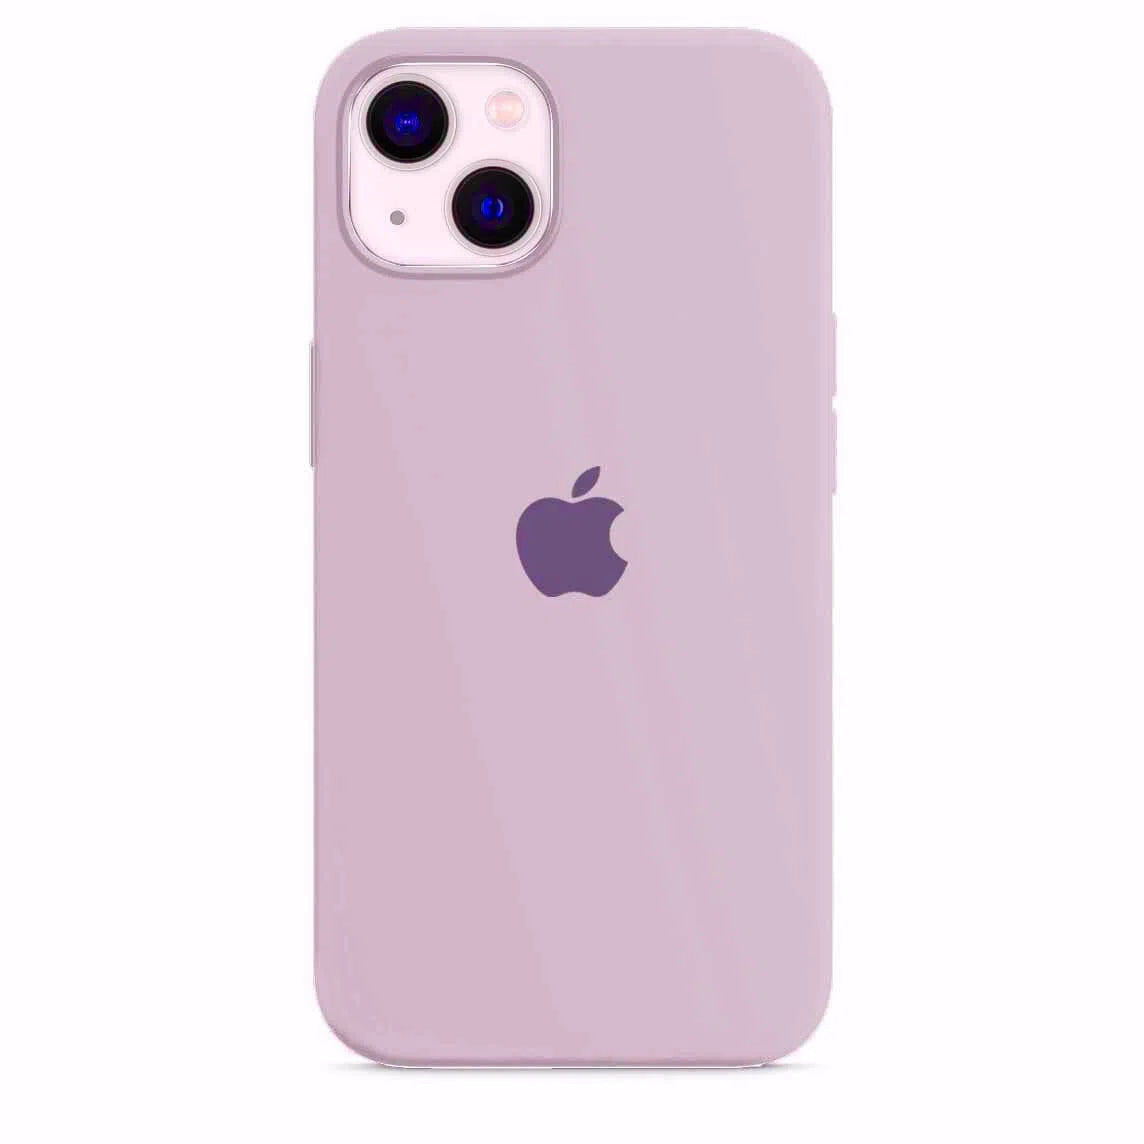 Husa iPhone Silicone Case Lavender (Mov Pal) Anca's Store 13 mini 